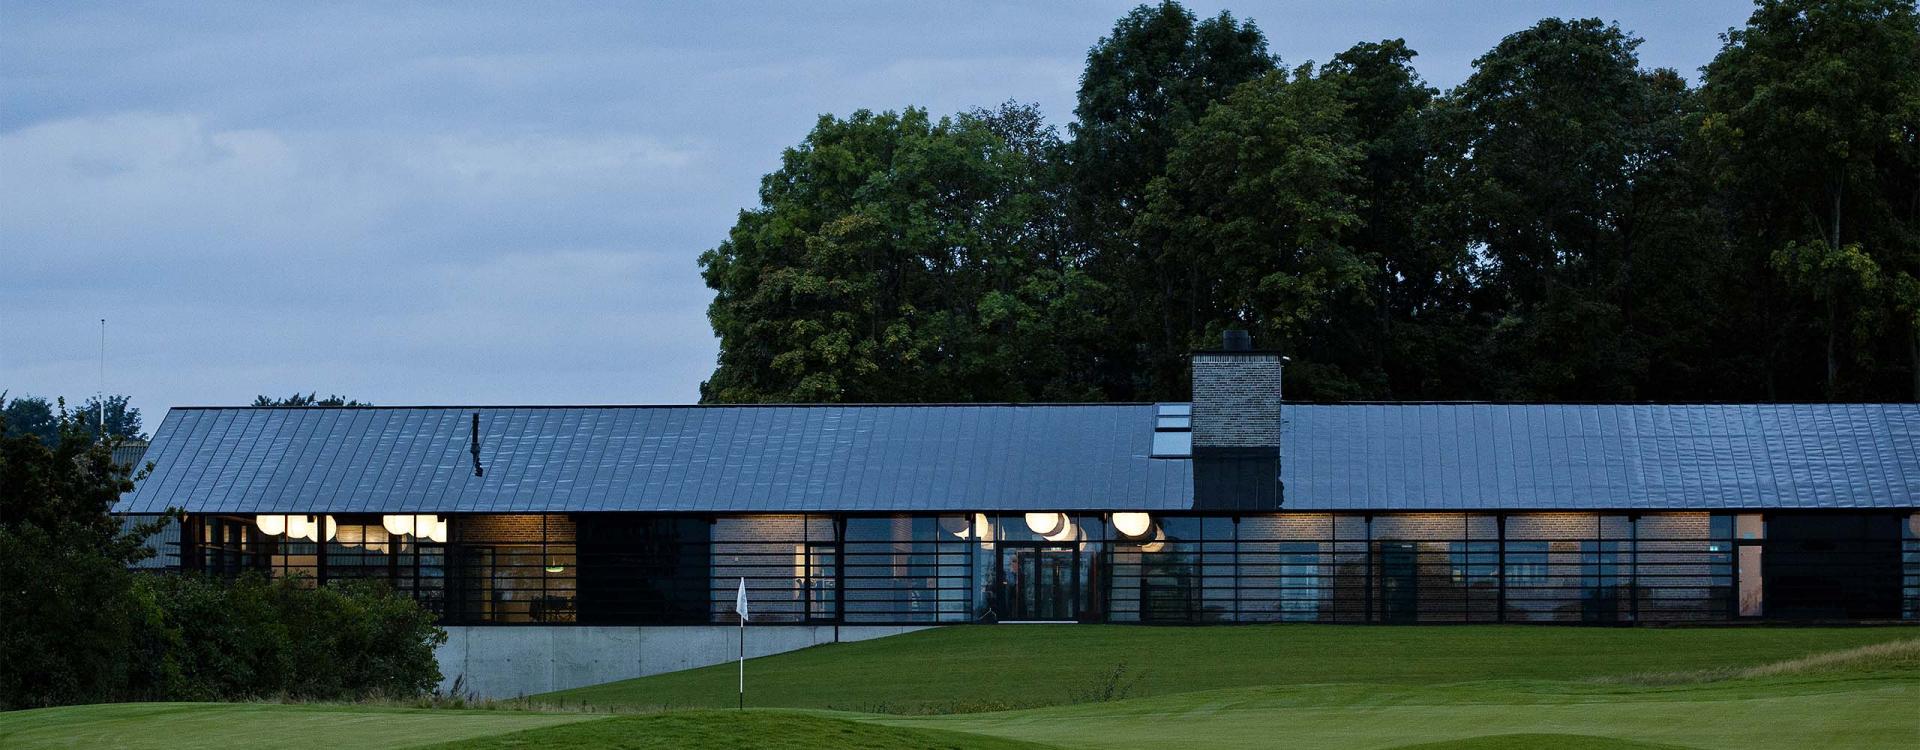 Внешний вид здания гольф-клуба